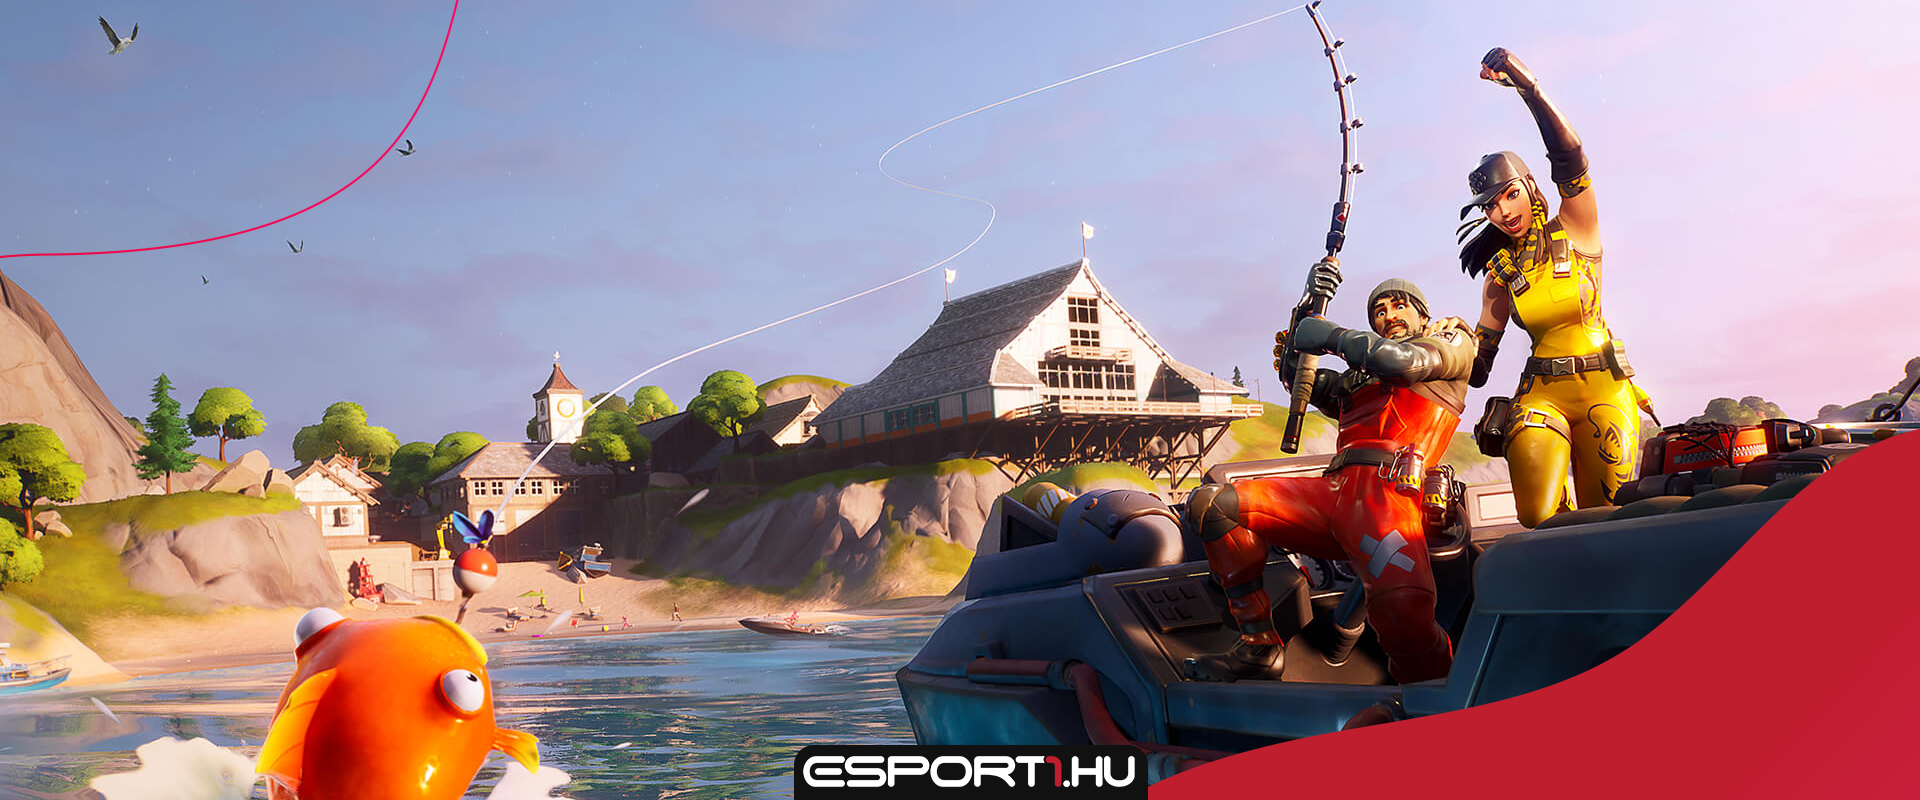 Horgászversenyt rendez az Epic Games a Fortnite-ban